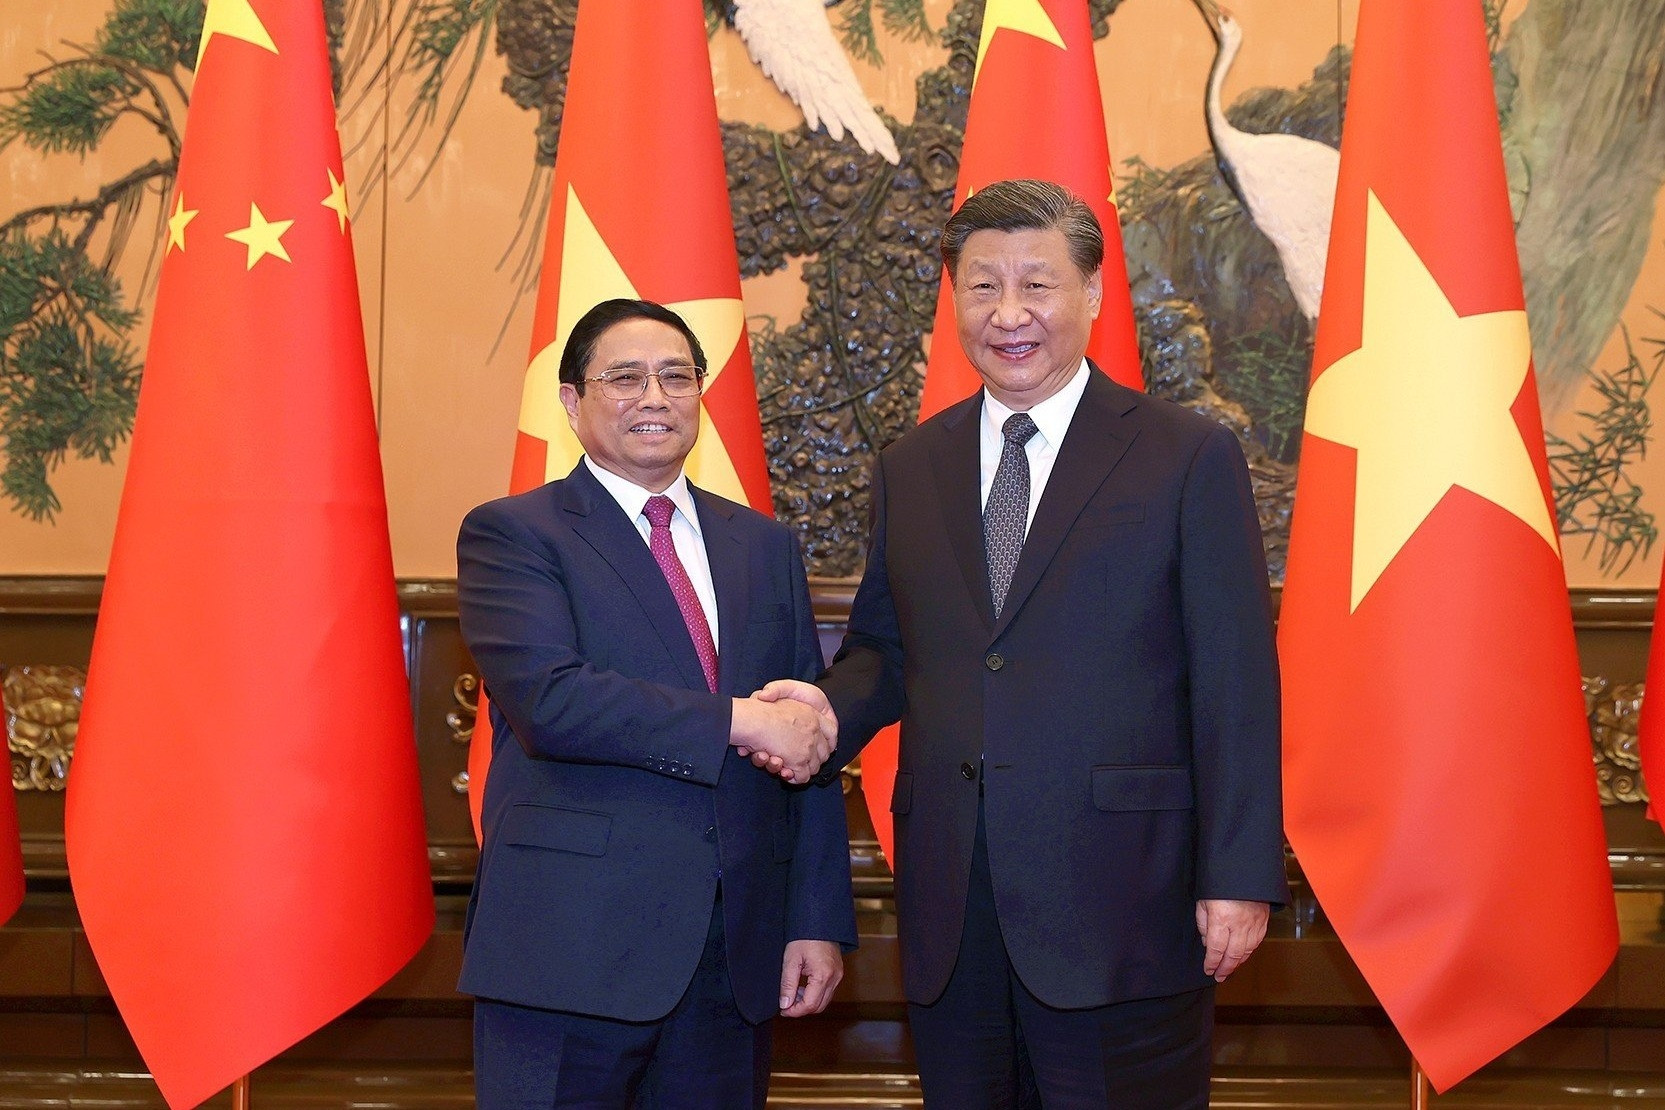 Trung Quốc đã dành cho Thủ tướng sự đón tiếp 'thắm tình đồng chí anh em'